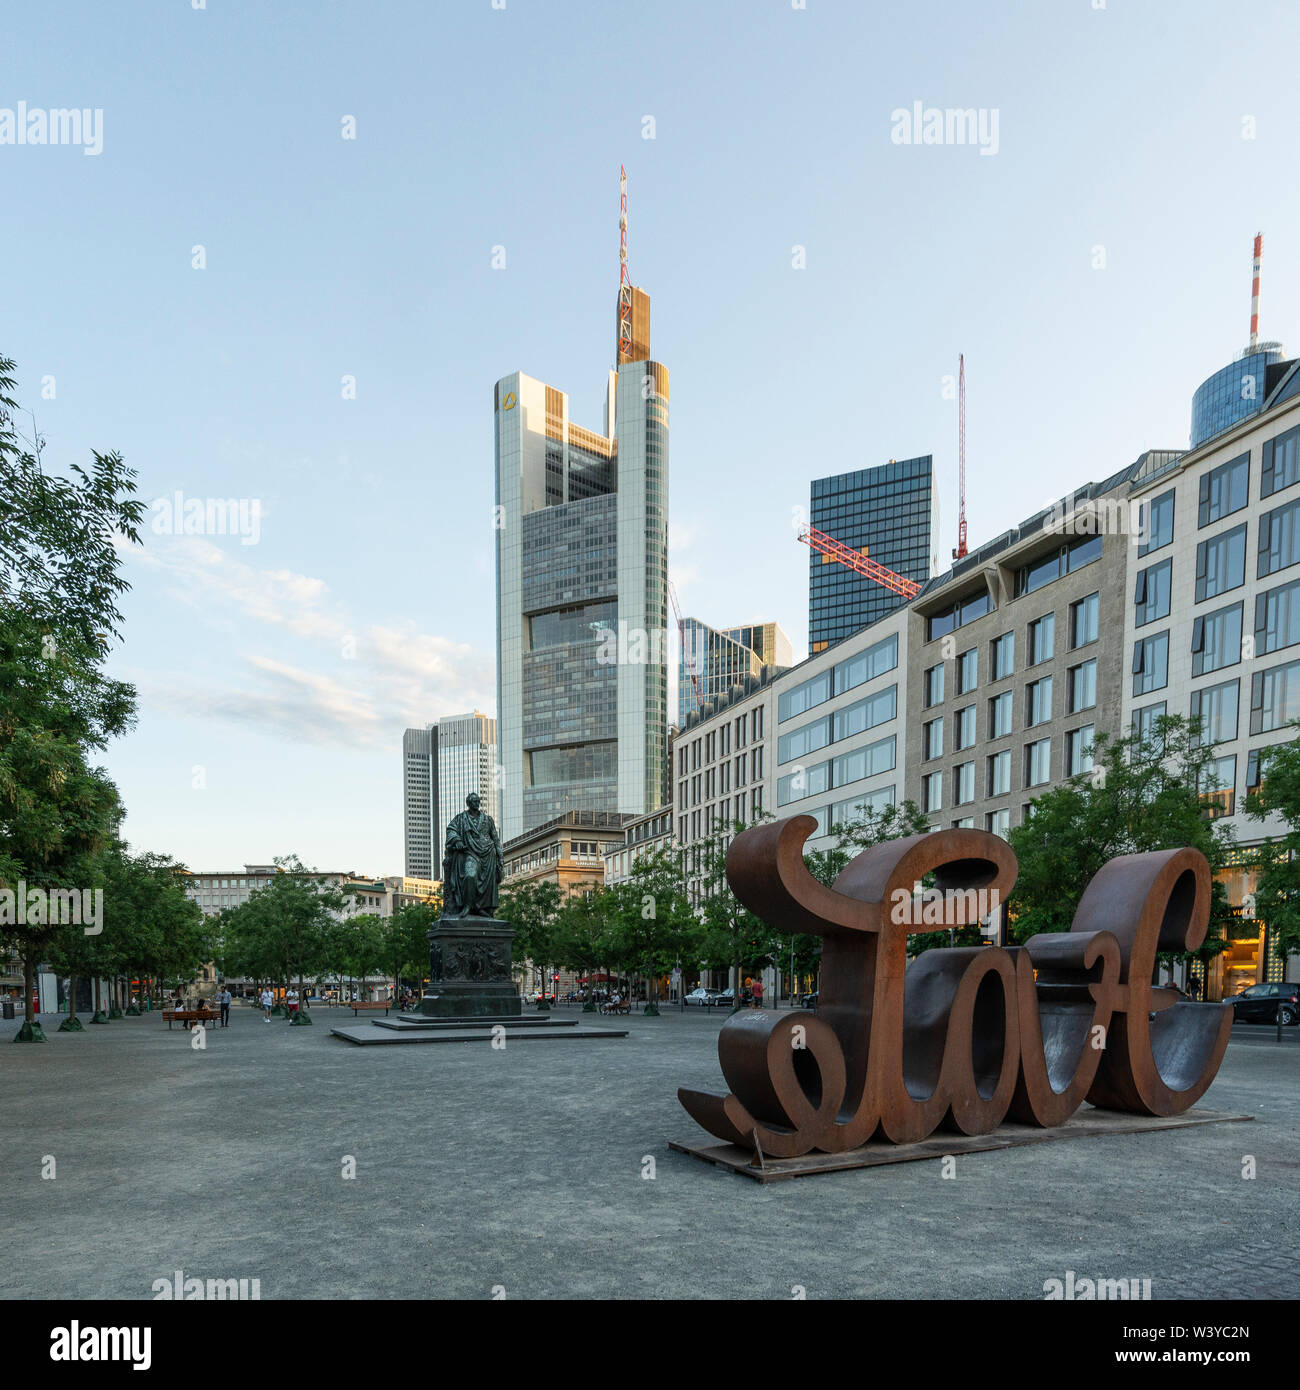 Frankfurt am Main, juillet 2019. Vue sur le monument et la statue de Goethe dans la place du même nom Banque D'Images